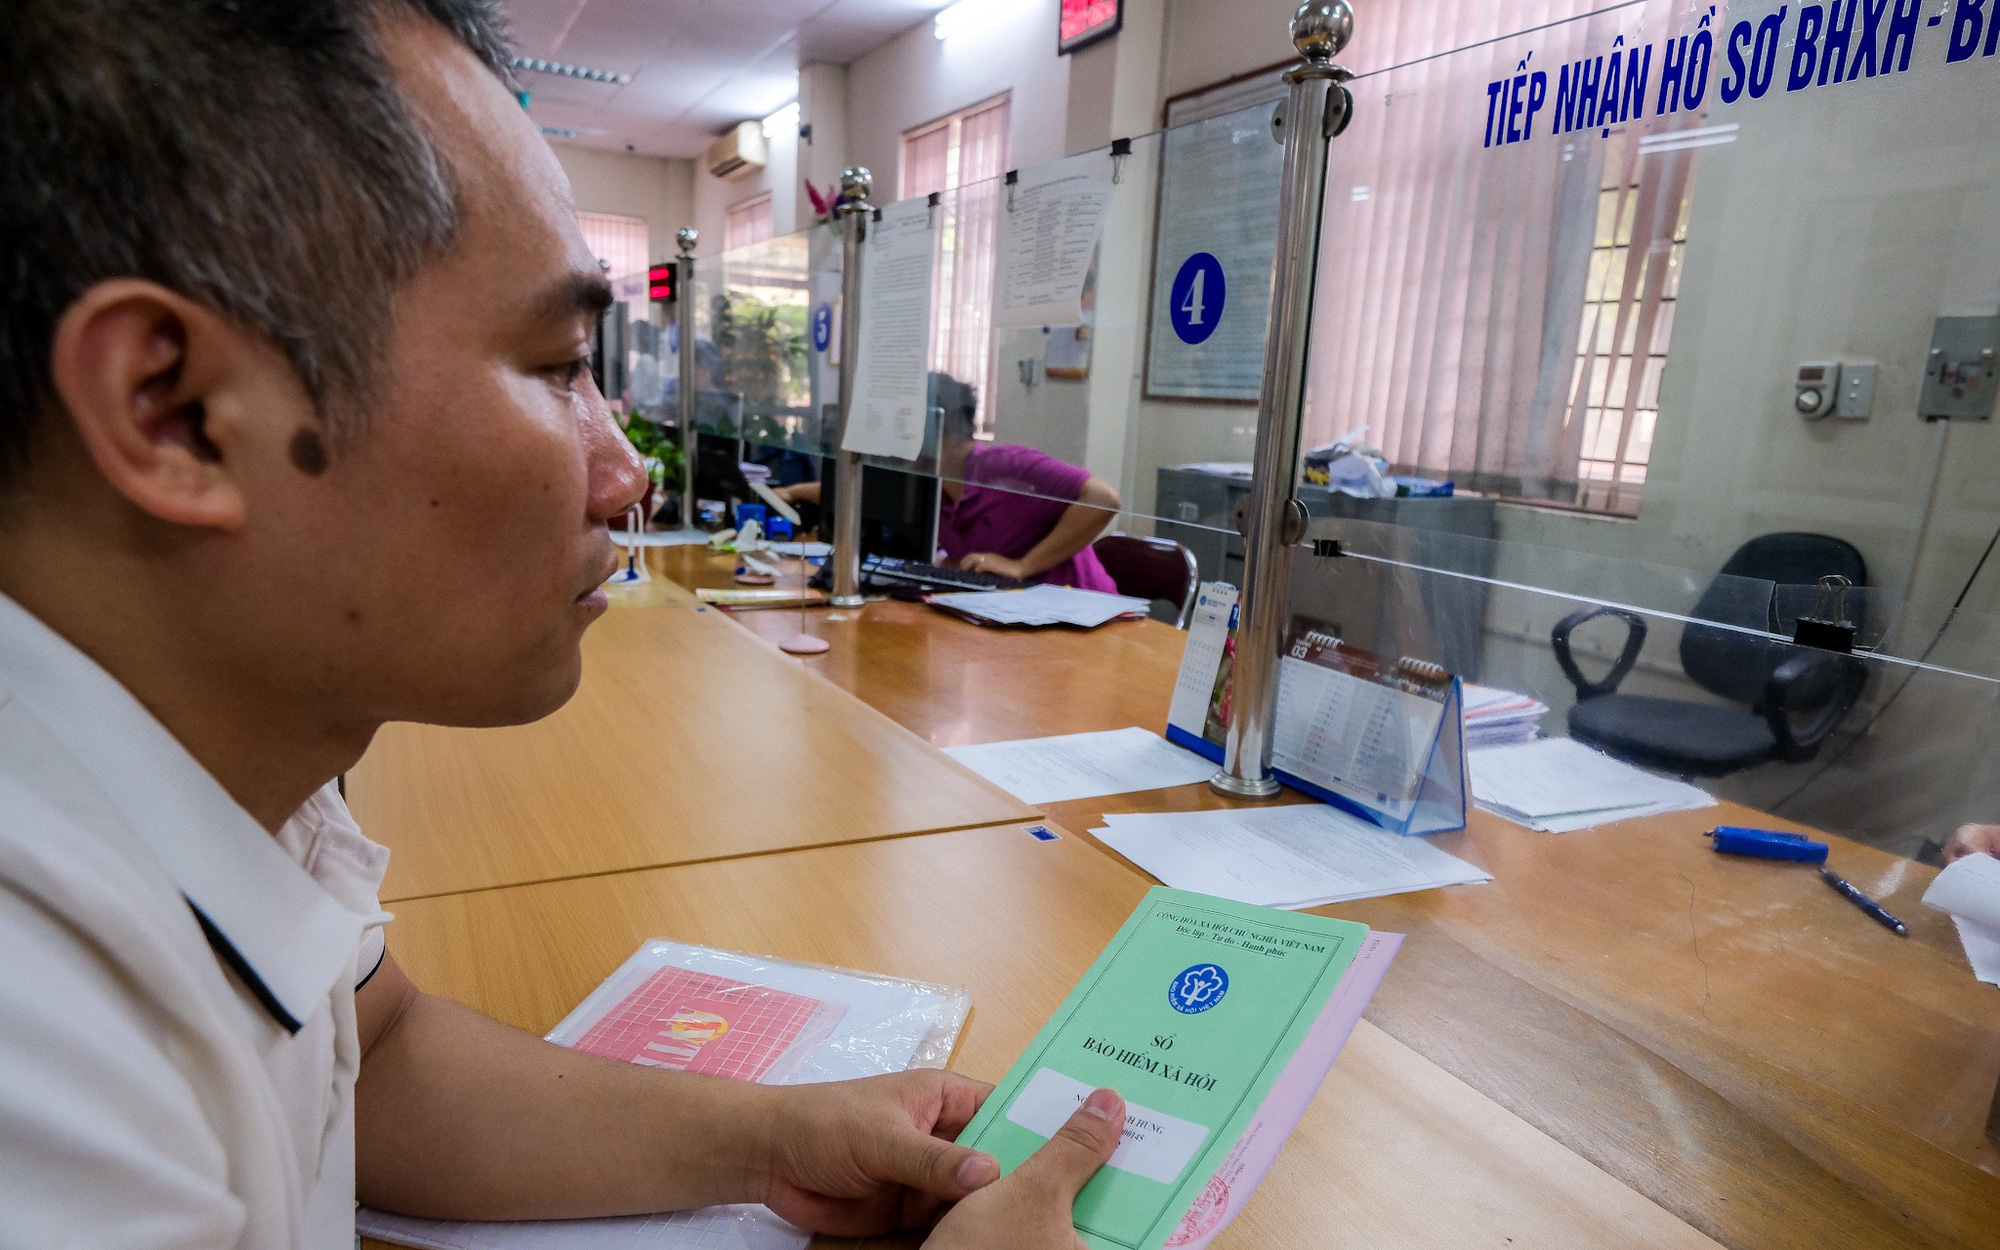 Bảo hiểm xã hội Việt Nam sẽ trả lương hưu, trợ cấp từ 14-8